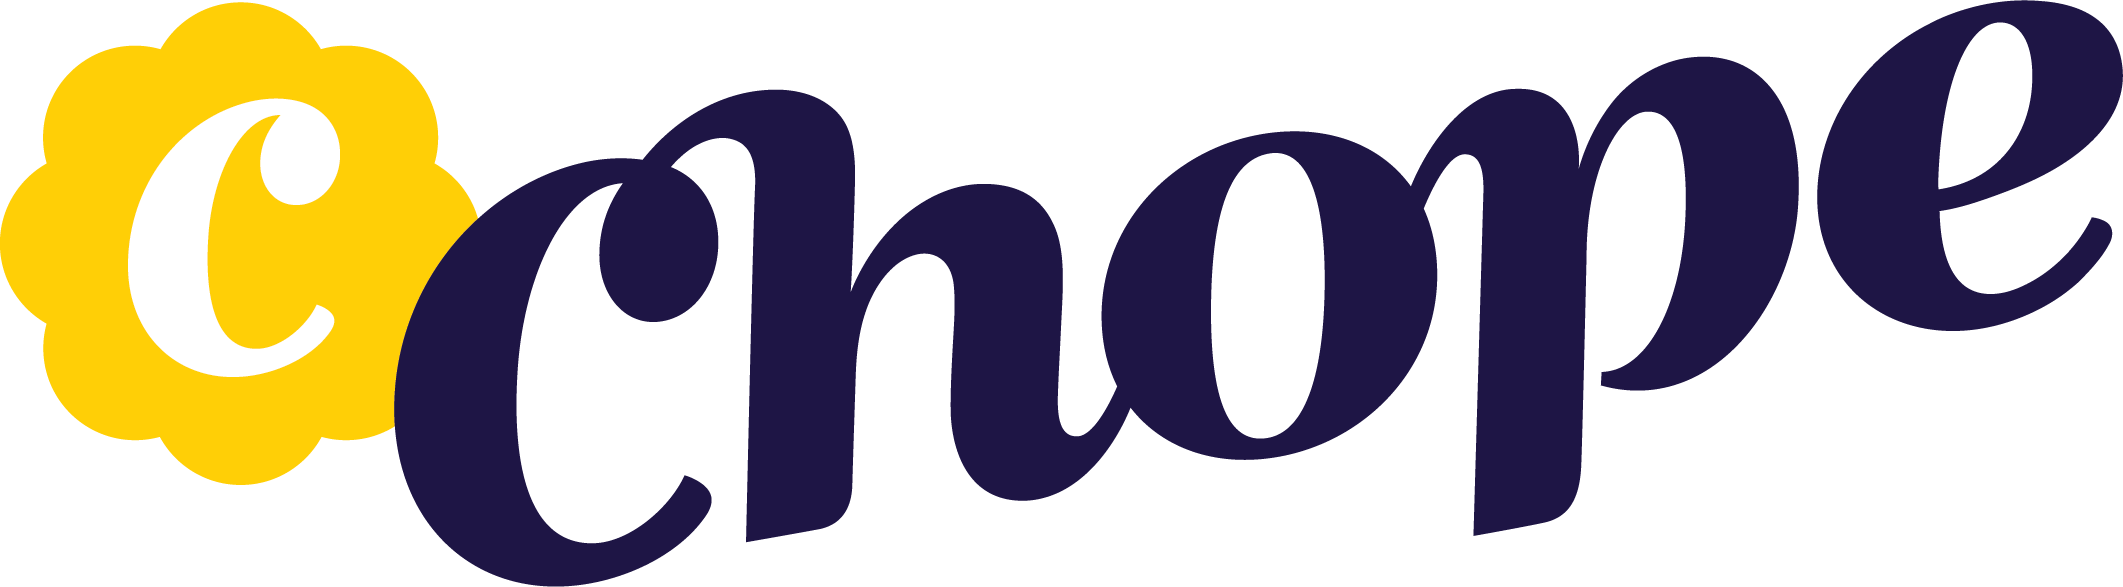 chope logo